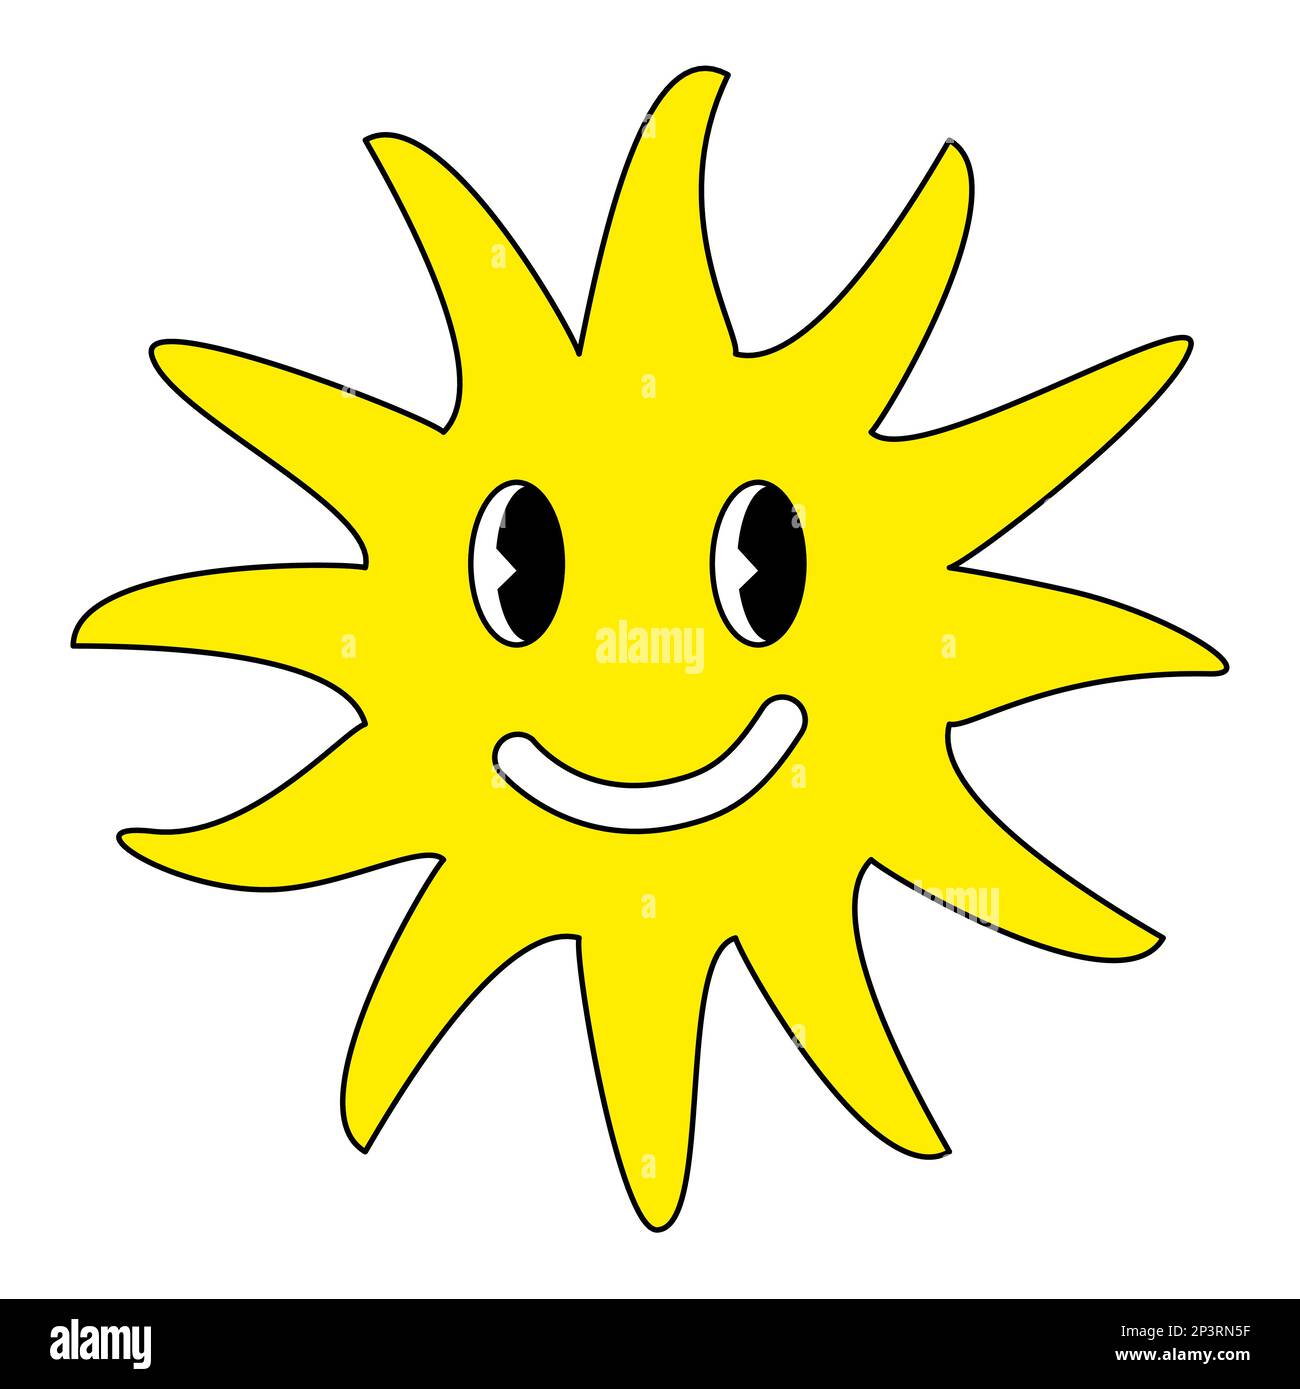 Stile retrò sorridente sole emoticon, stile doodle disegno piatto vettore Illustrazione Vettoriale